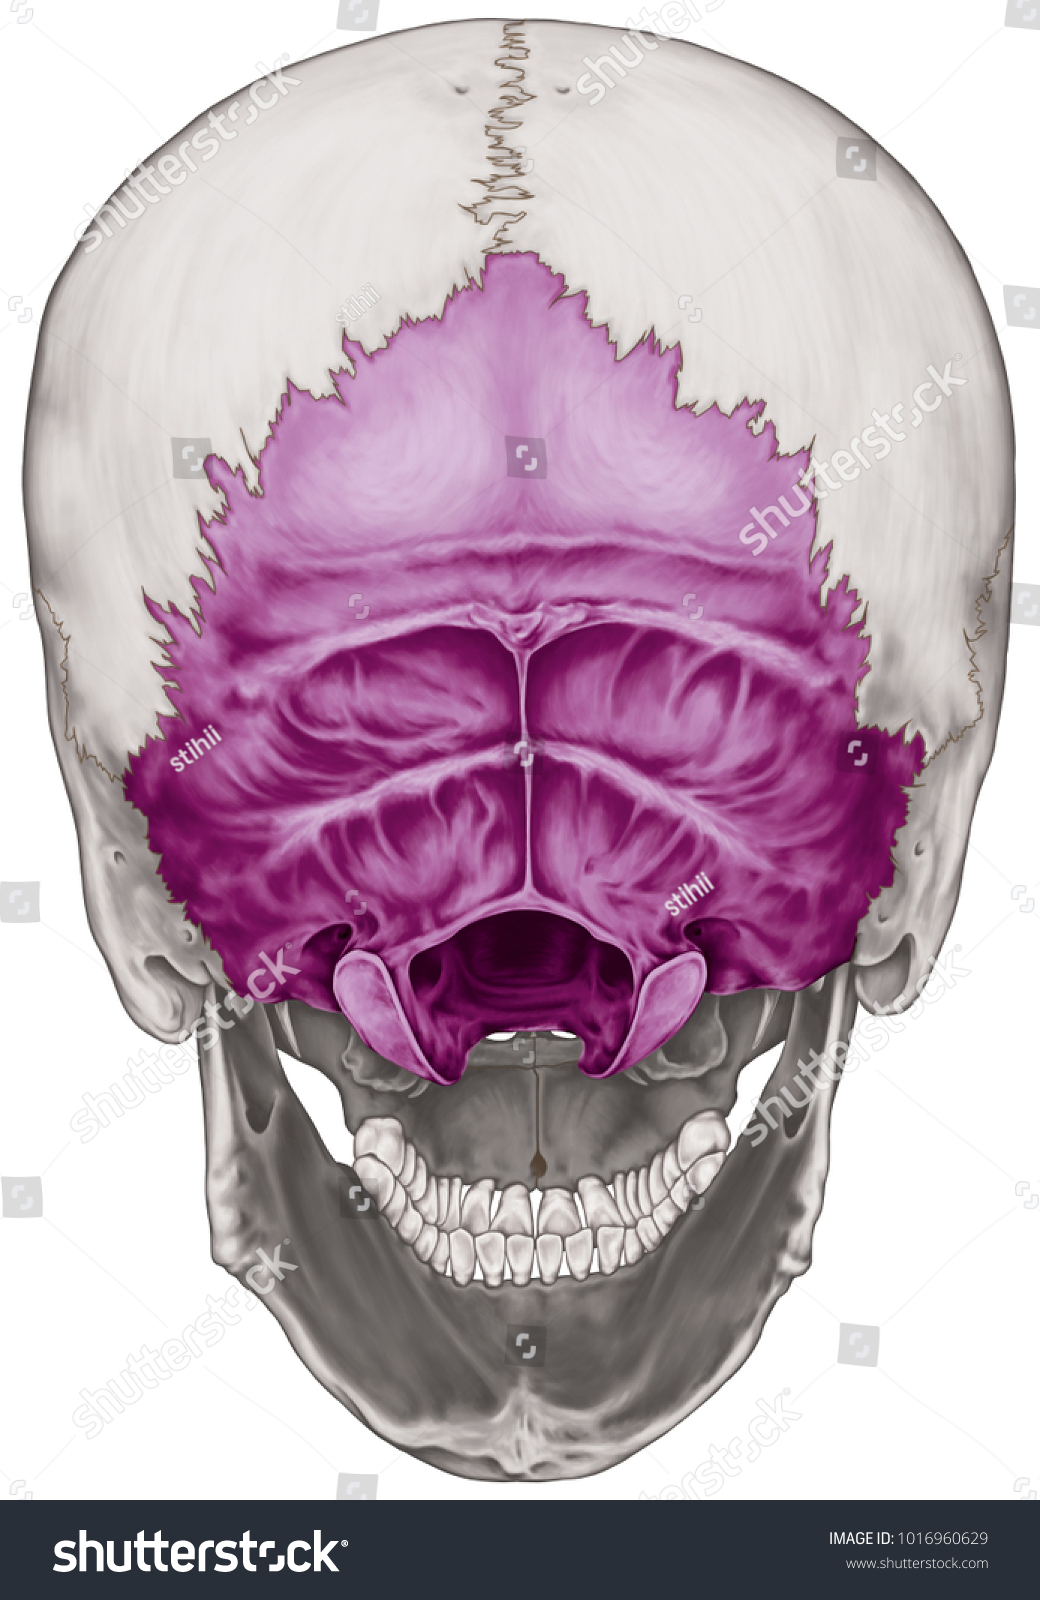 Occipital Bone Cranium Bones Head Skull Stock Illustration 1016960629 Shutterstock 0289